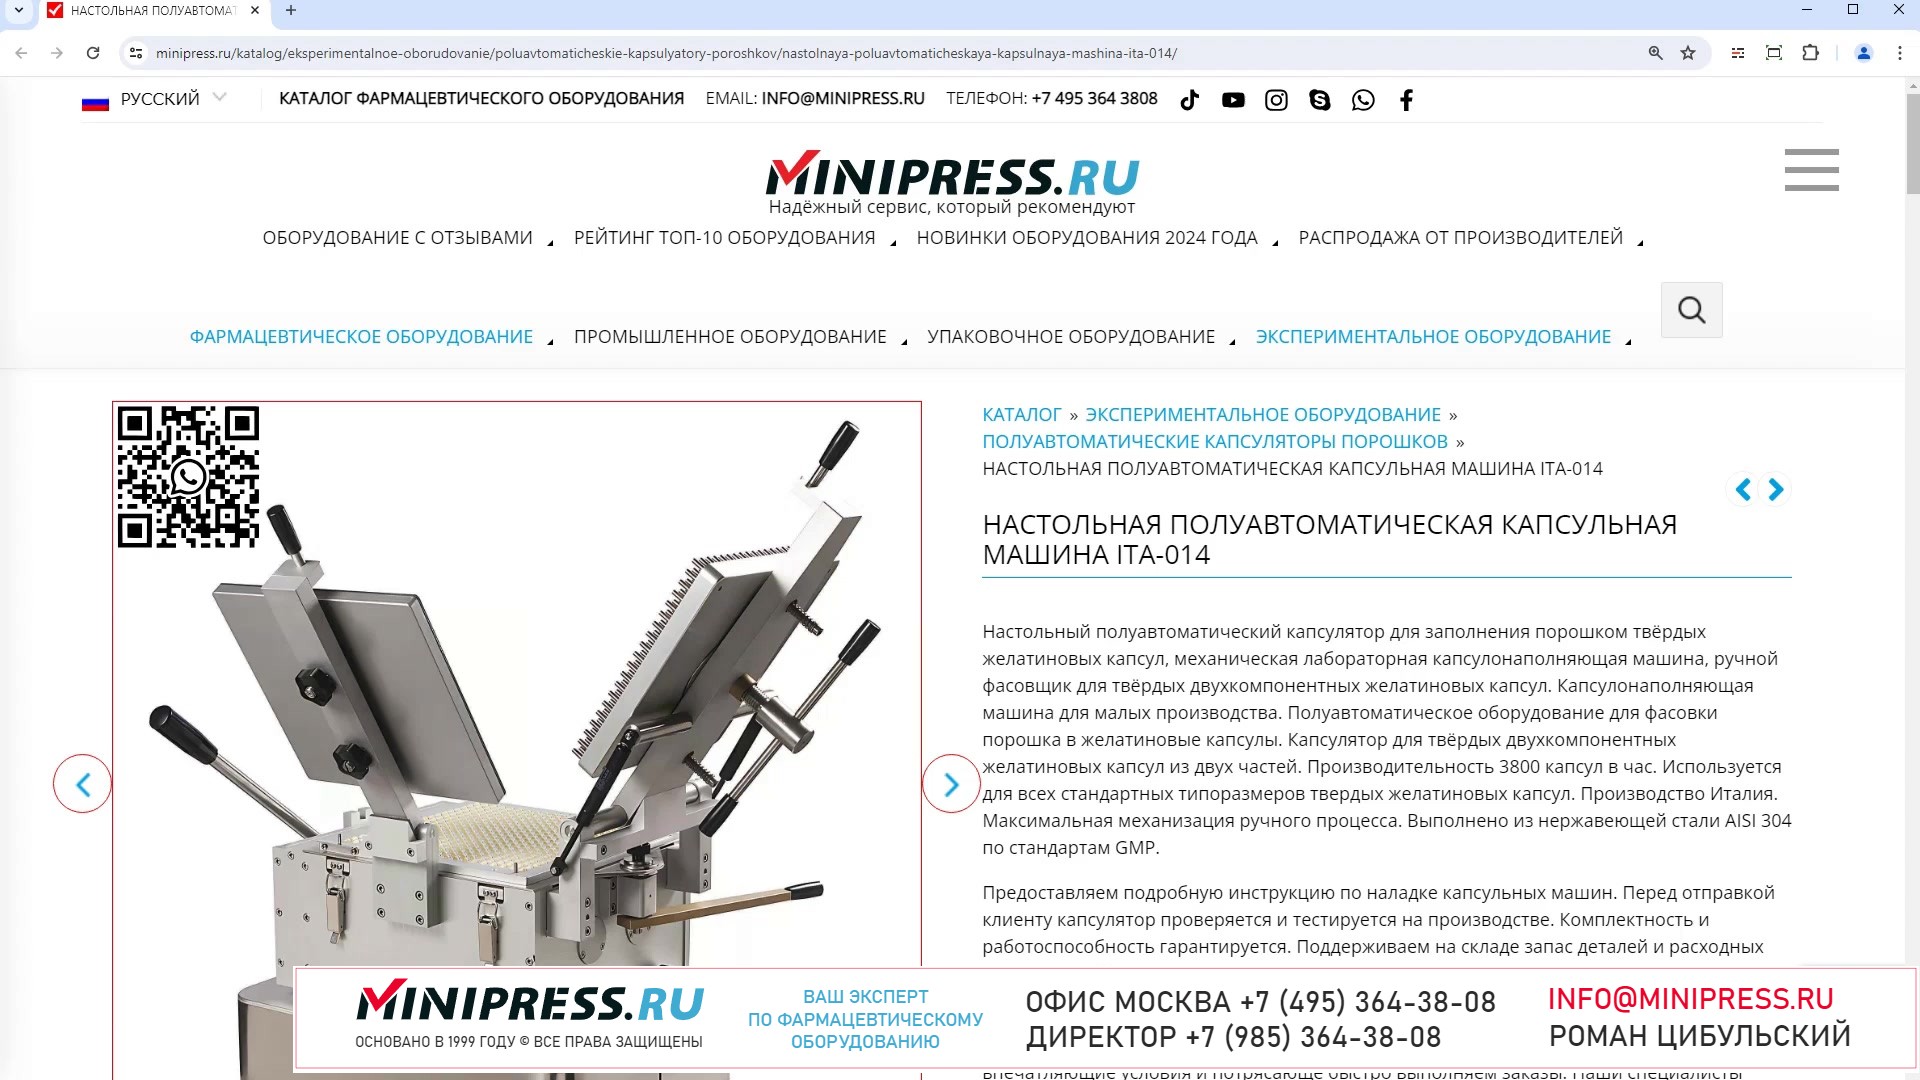 Minipress.ru Настольная полуавтоматическая капсульная машина ITA-014